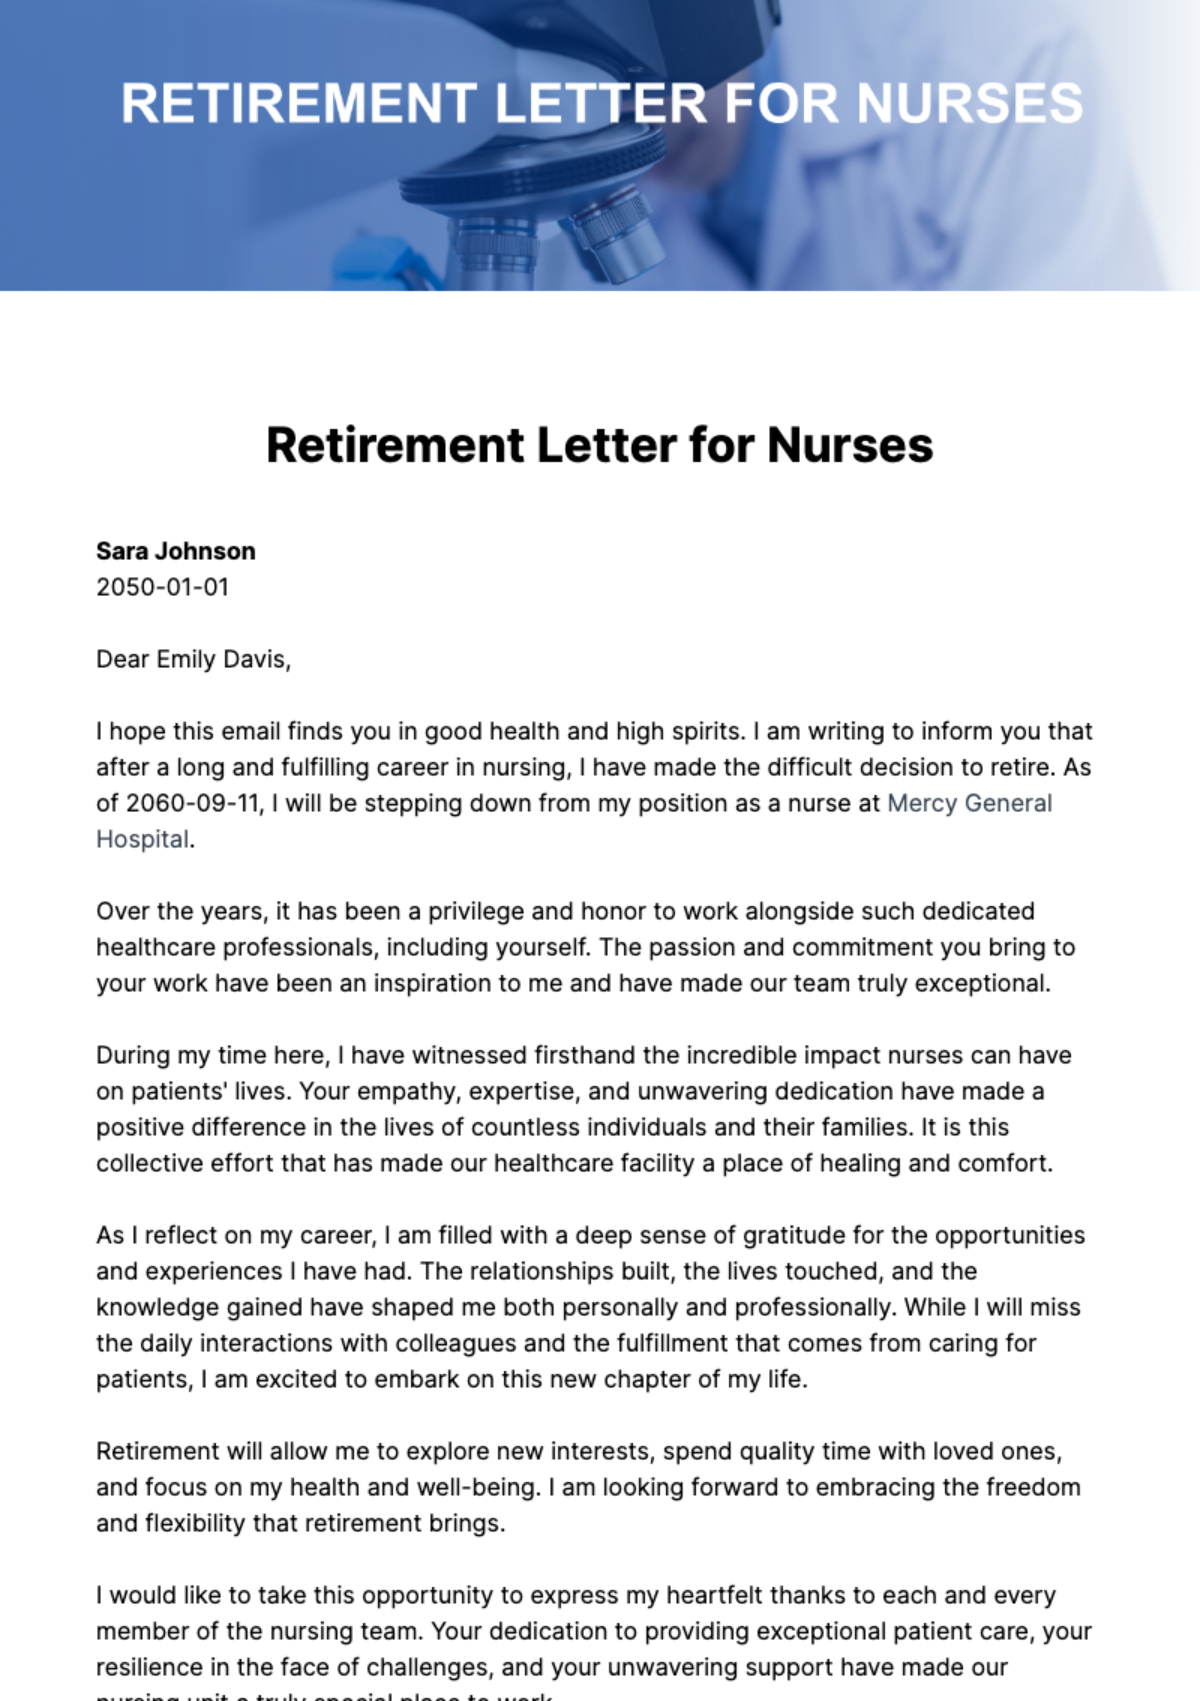 Retirement Letter For Nurses Template